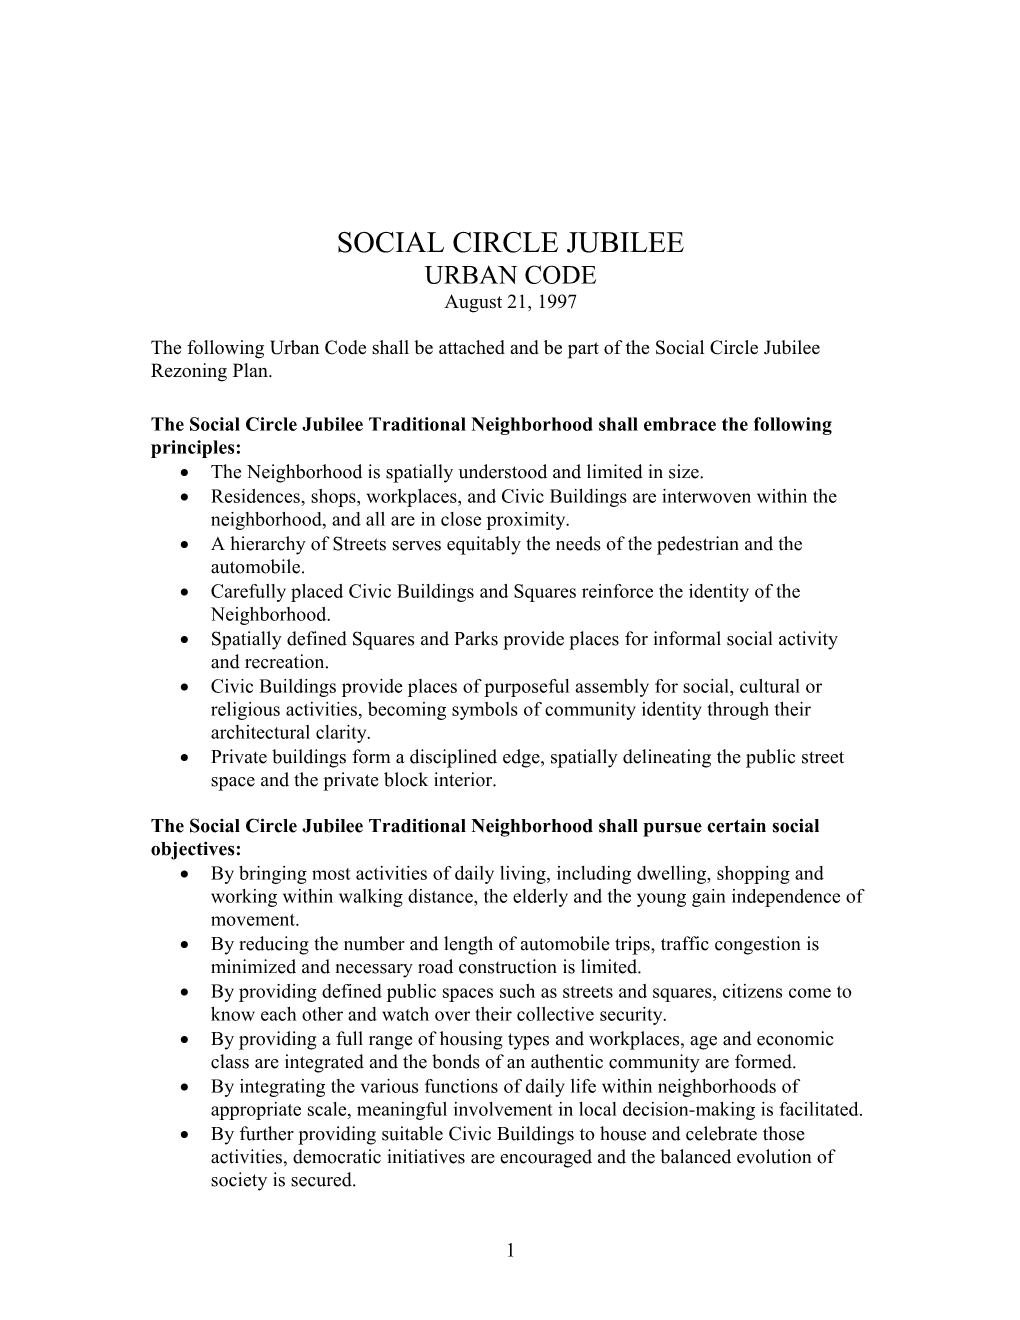 Urban Code Social Circle Jubile